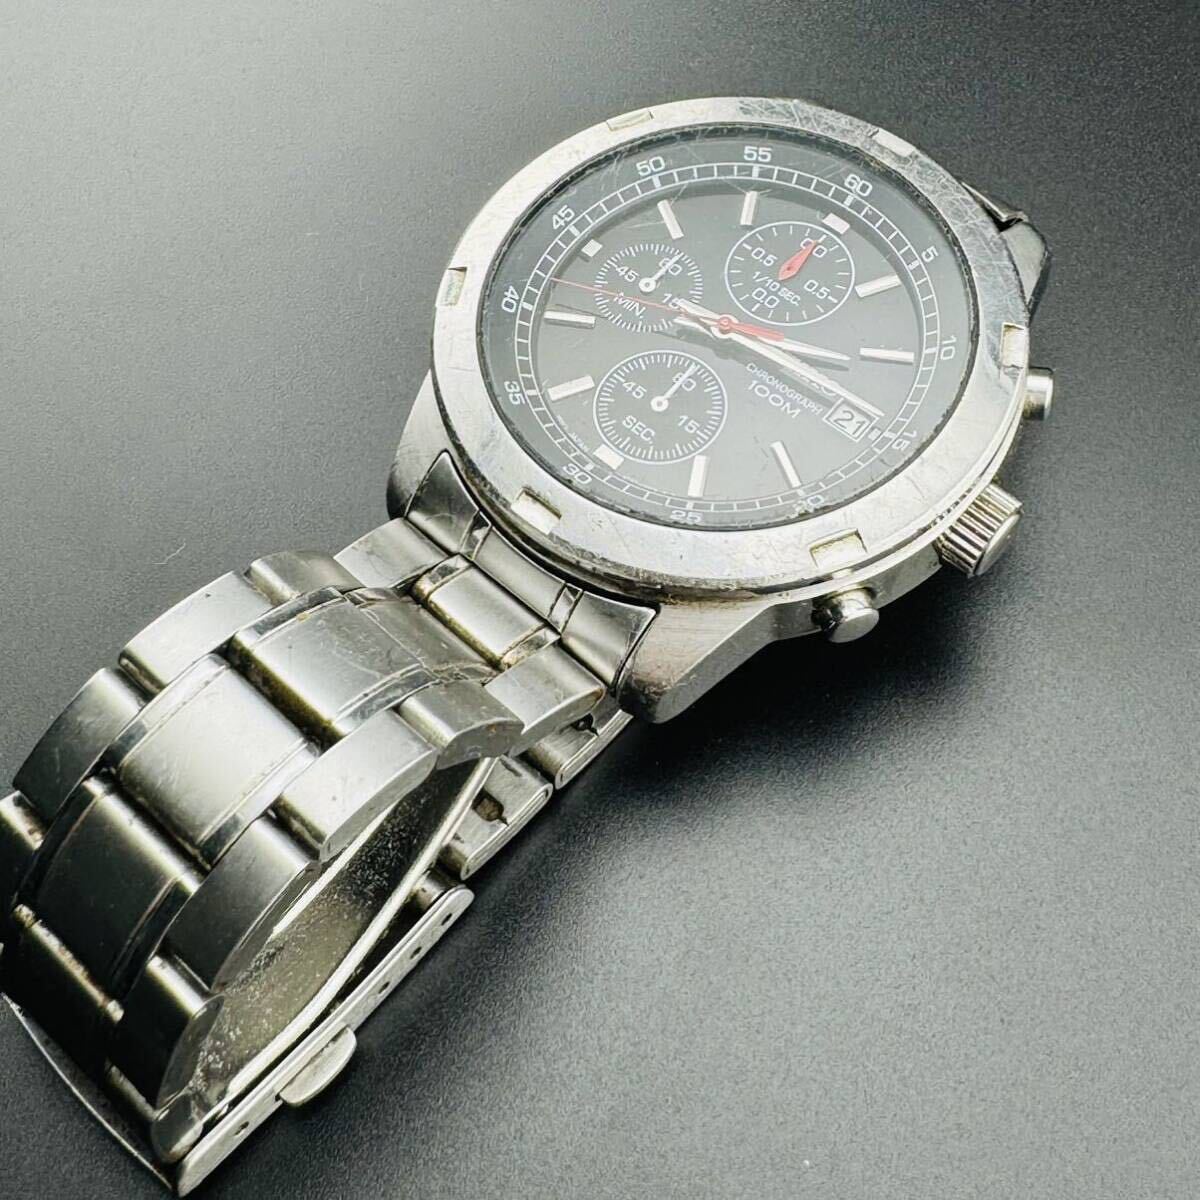 SEIKO/セイコー クロノグラフ 4T57-00B0 アナログ クォーツ メンズ 腕時計USED 動作確認済み!ジャンク品 時計 SEIKO QUARTZの画像2